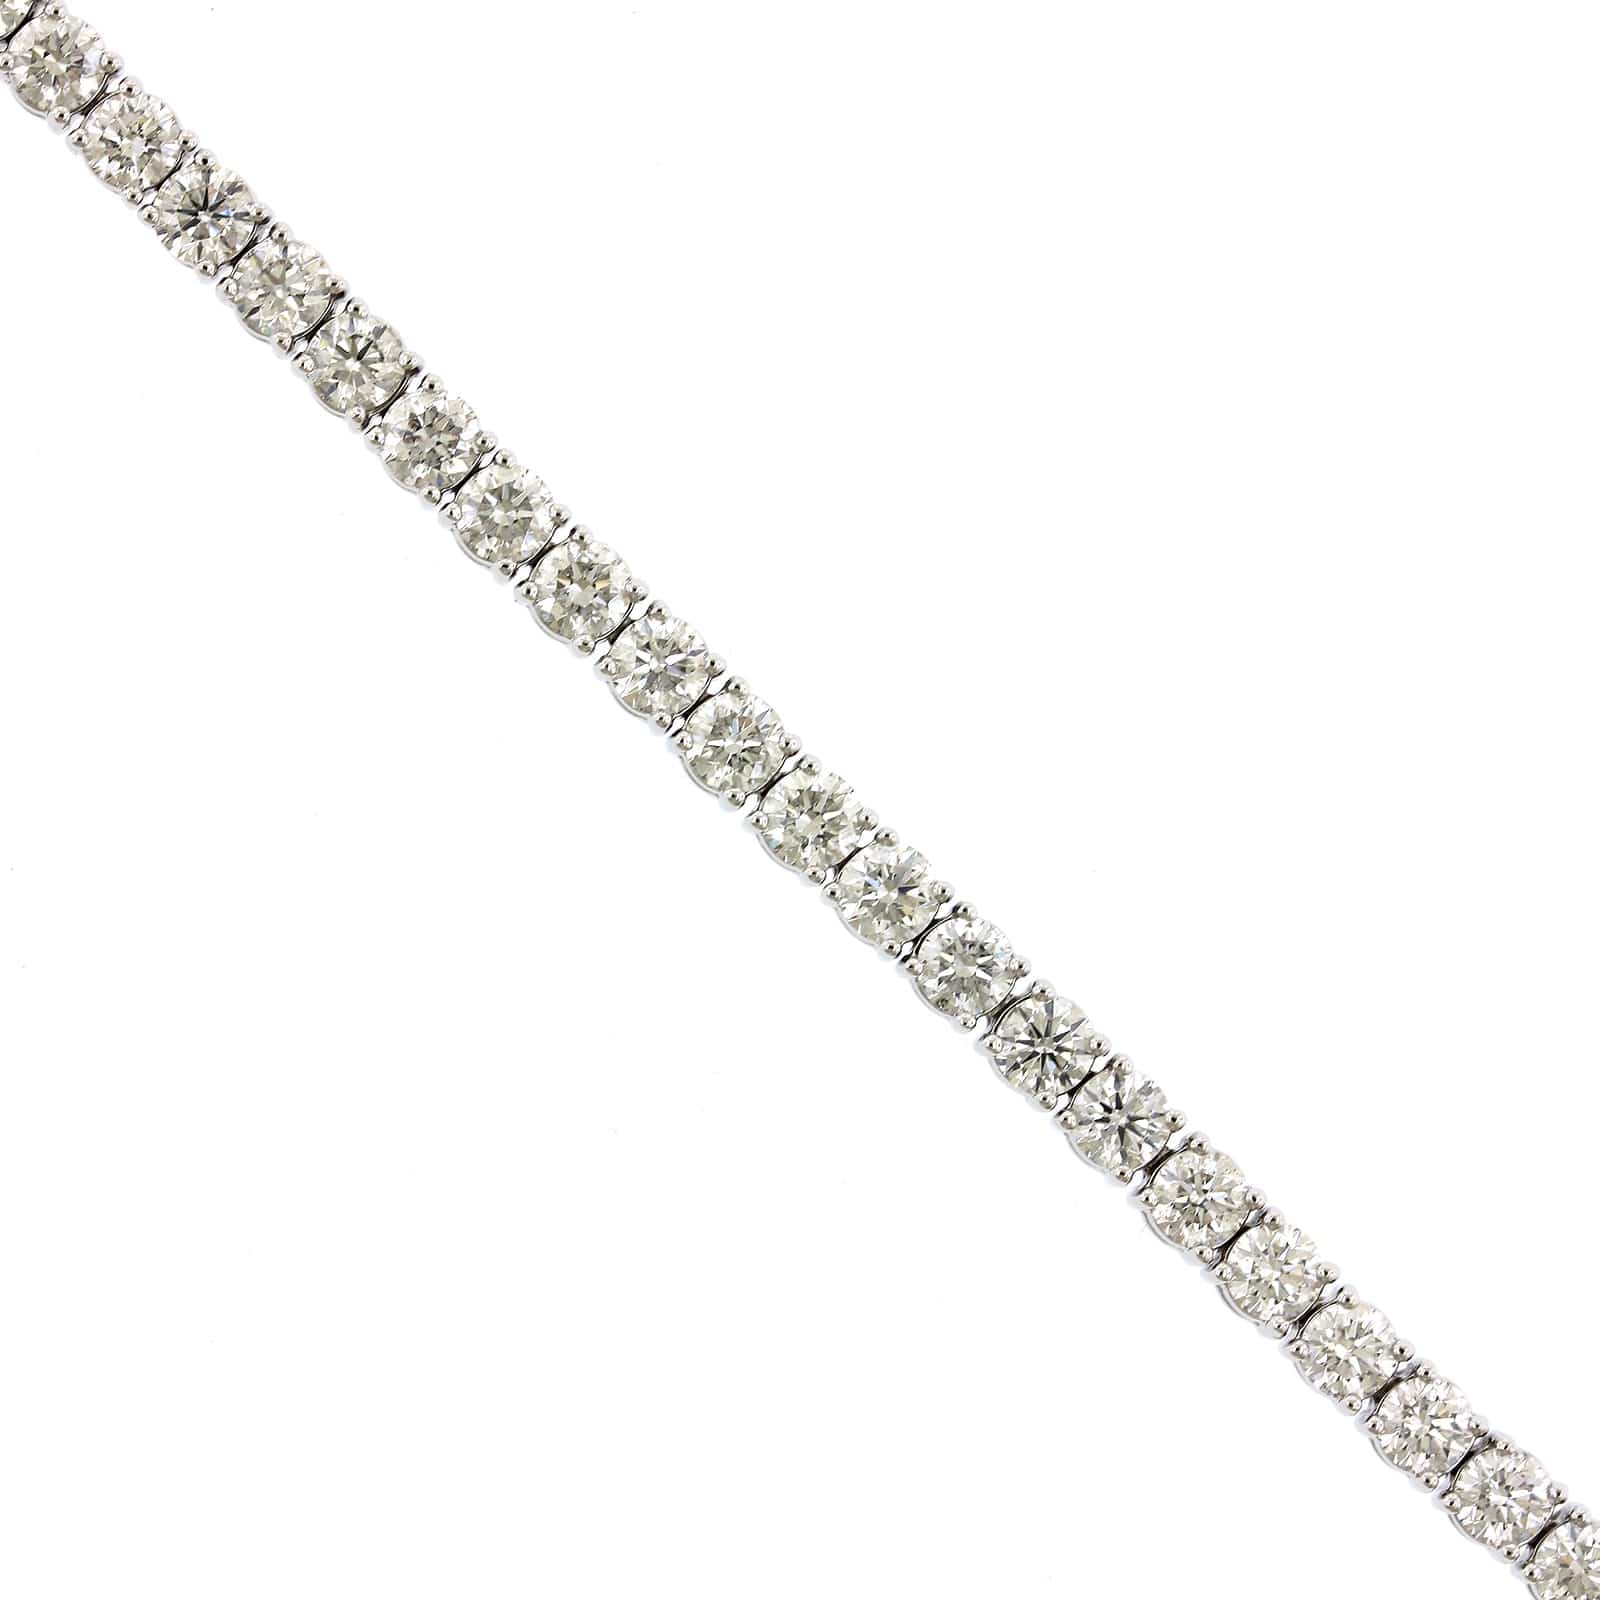 18K White Gold Shared Prong Diamond Tennis Bracelet, white gold, Long's Jewelers